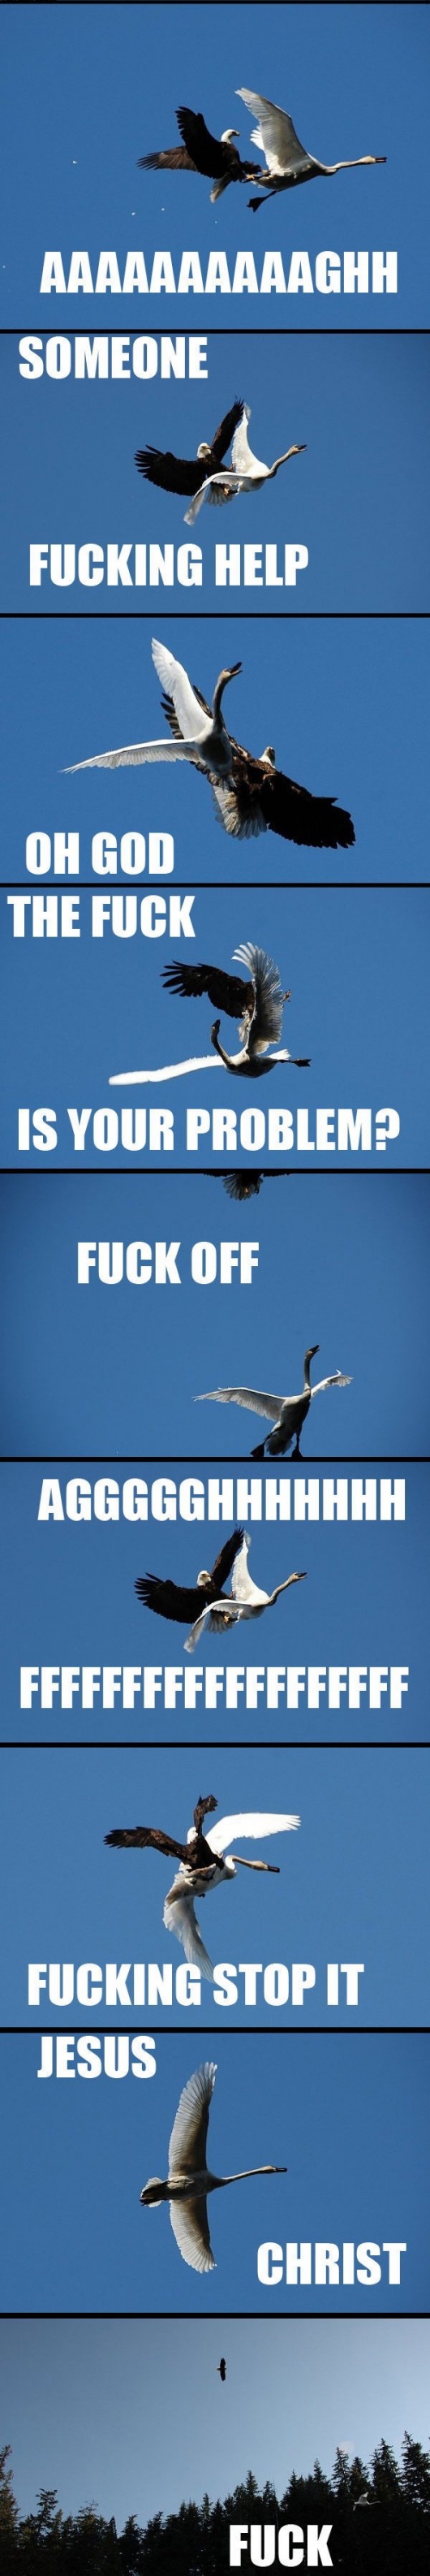 Eagle vs. swan in mid-air